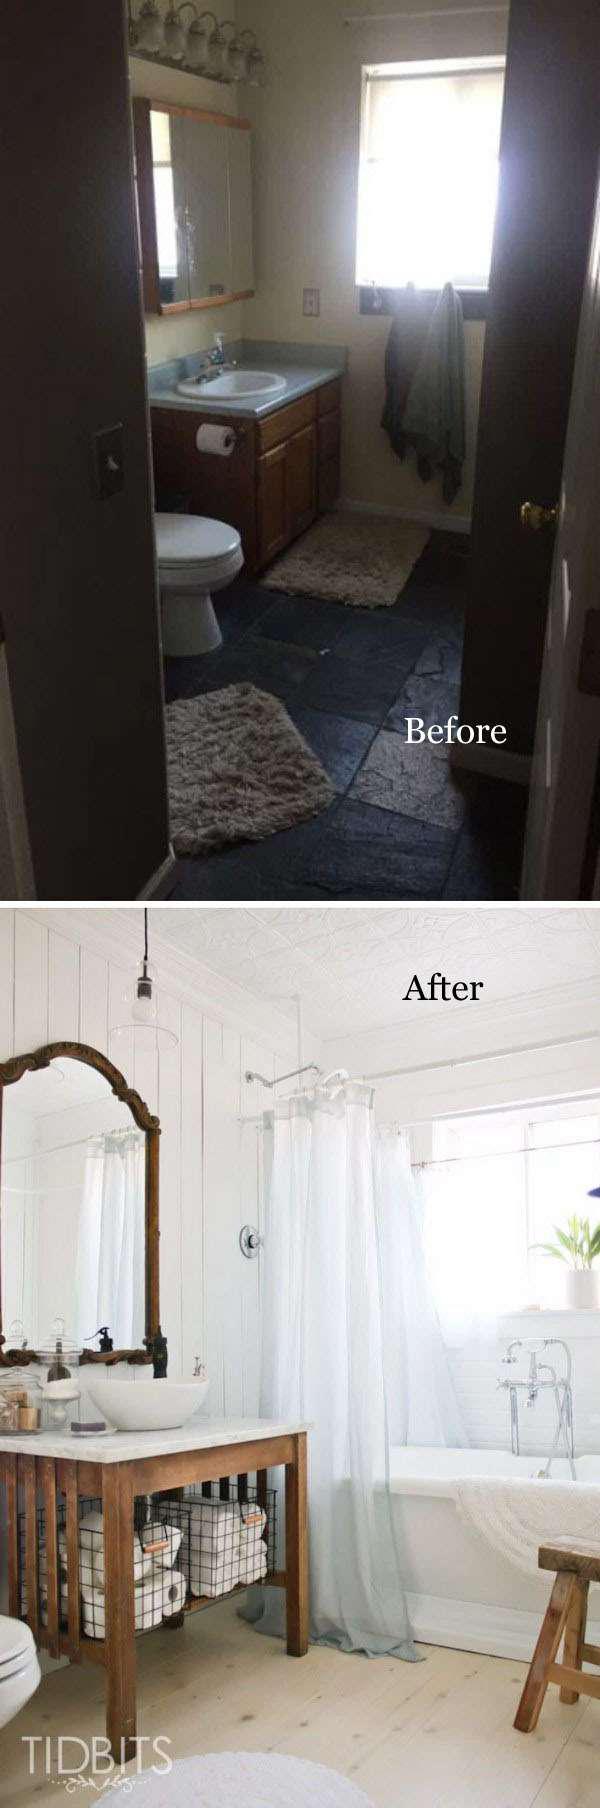 16 идей преображения старой ванной комнаты 8 | Дока-Мастер